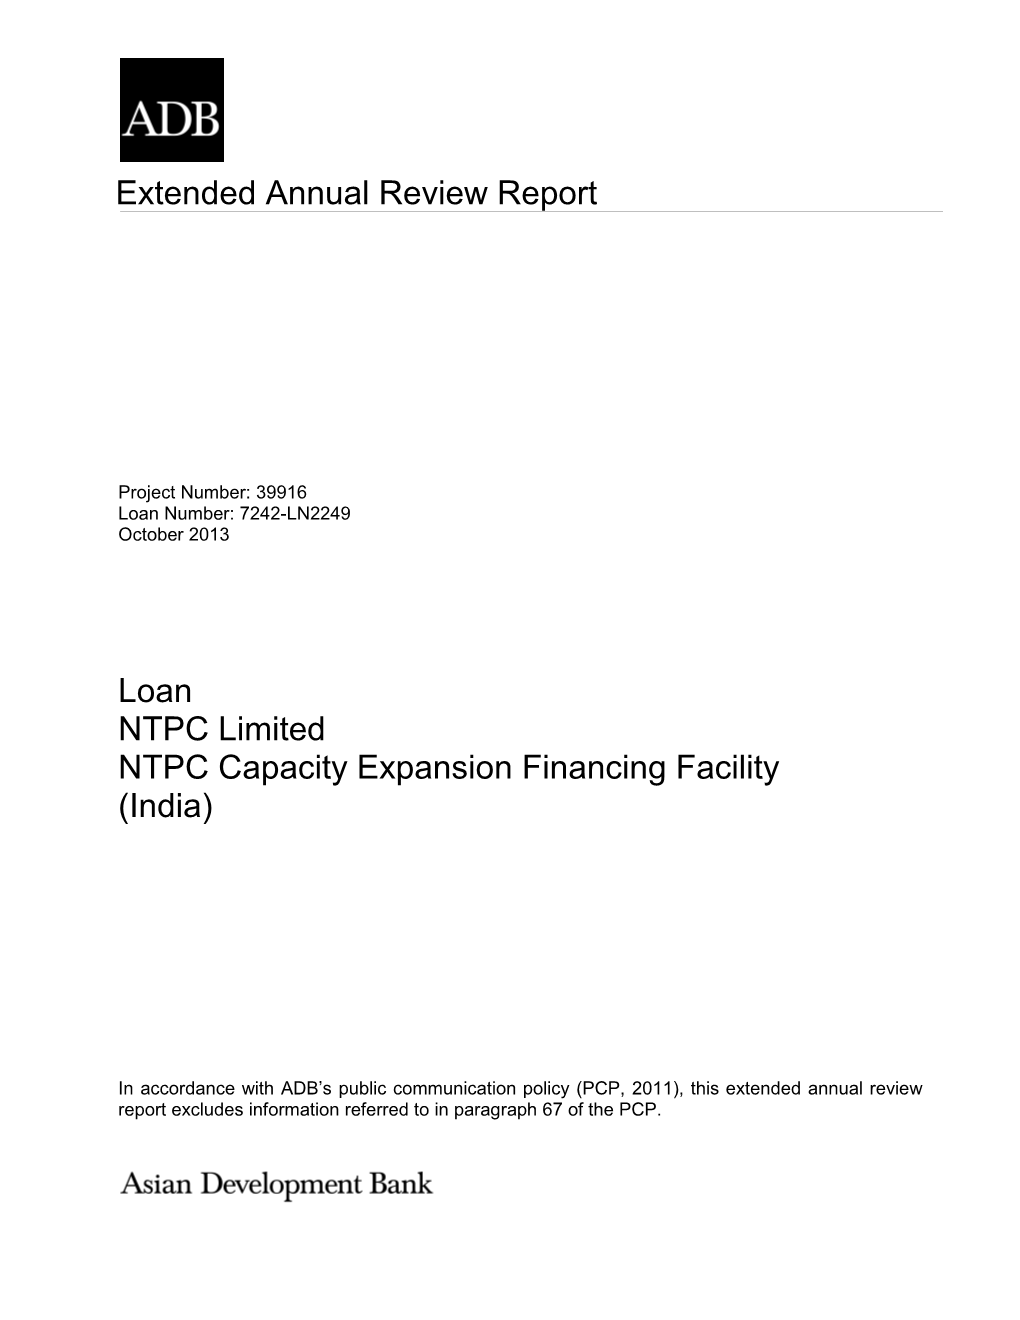 NTPC Capacity Expansion Financing Facility (India)